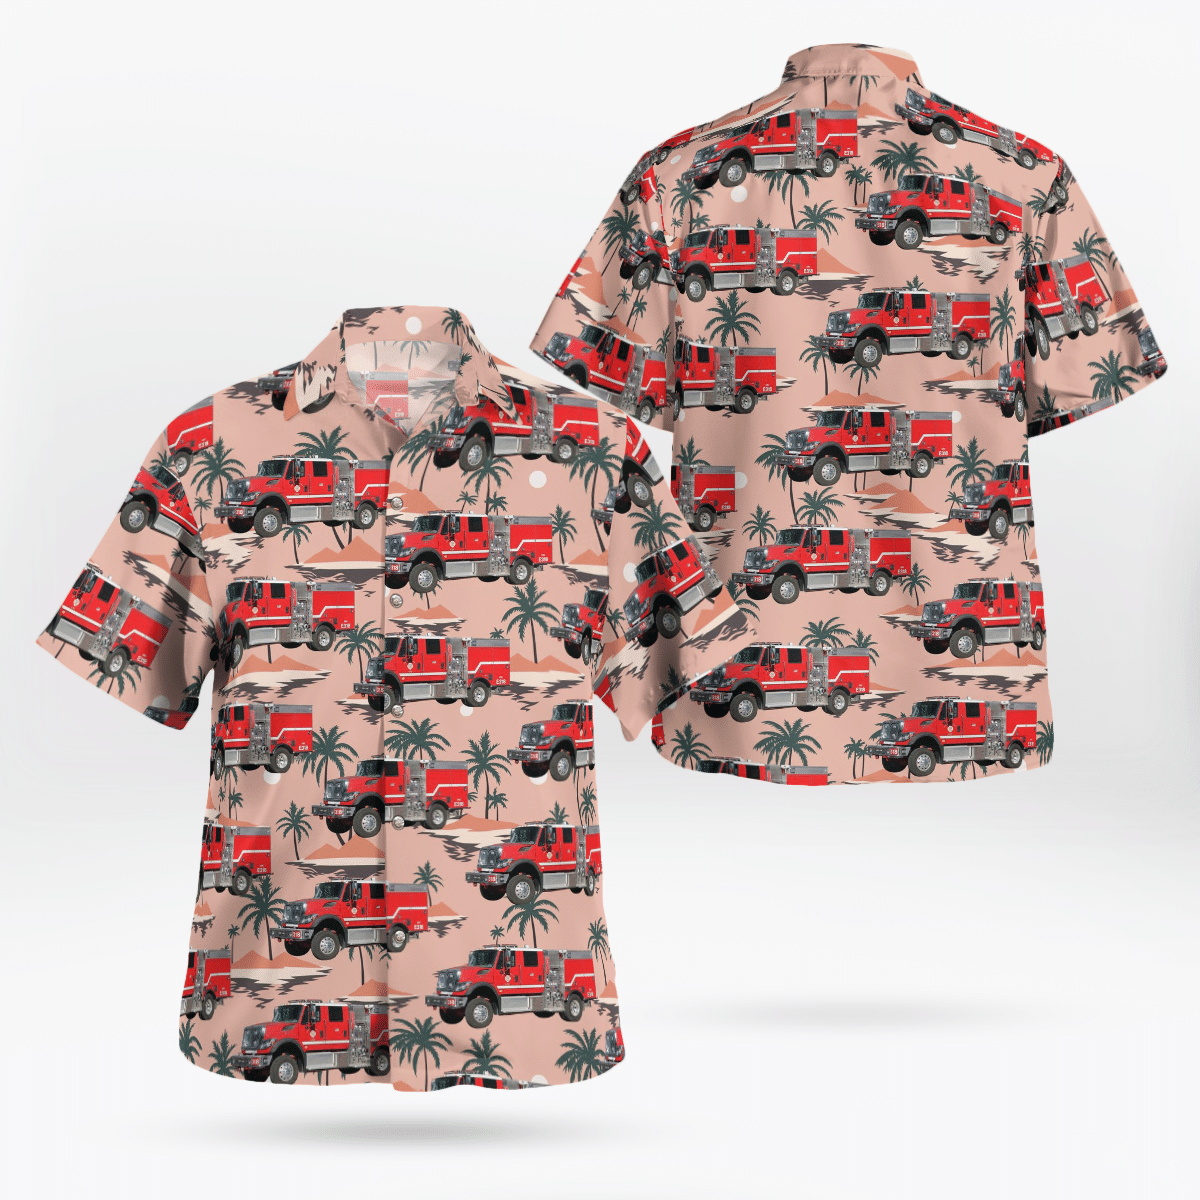 You won't regret buying these Aloha Shirt 61